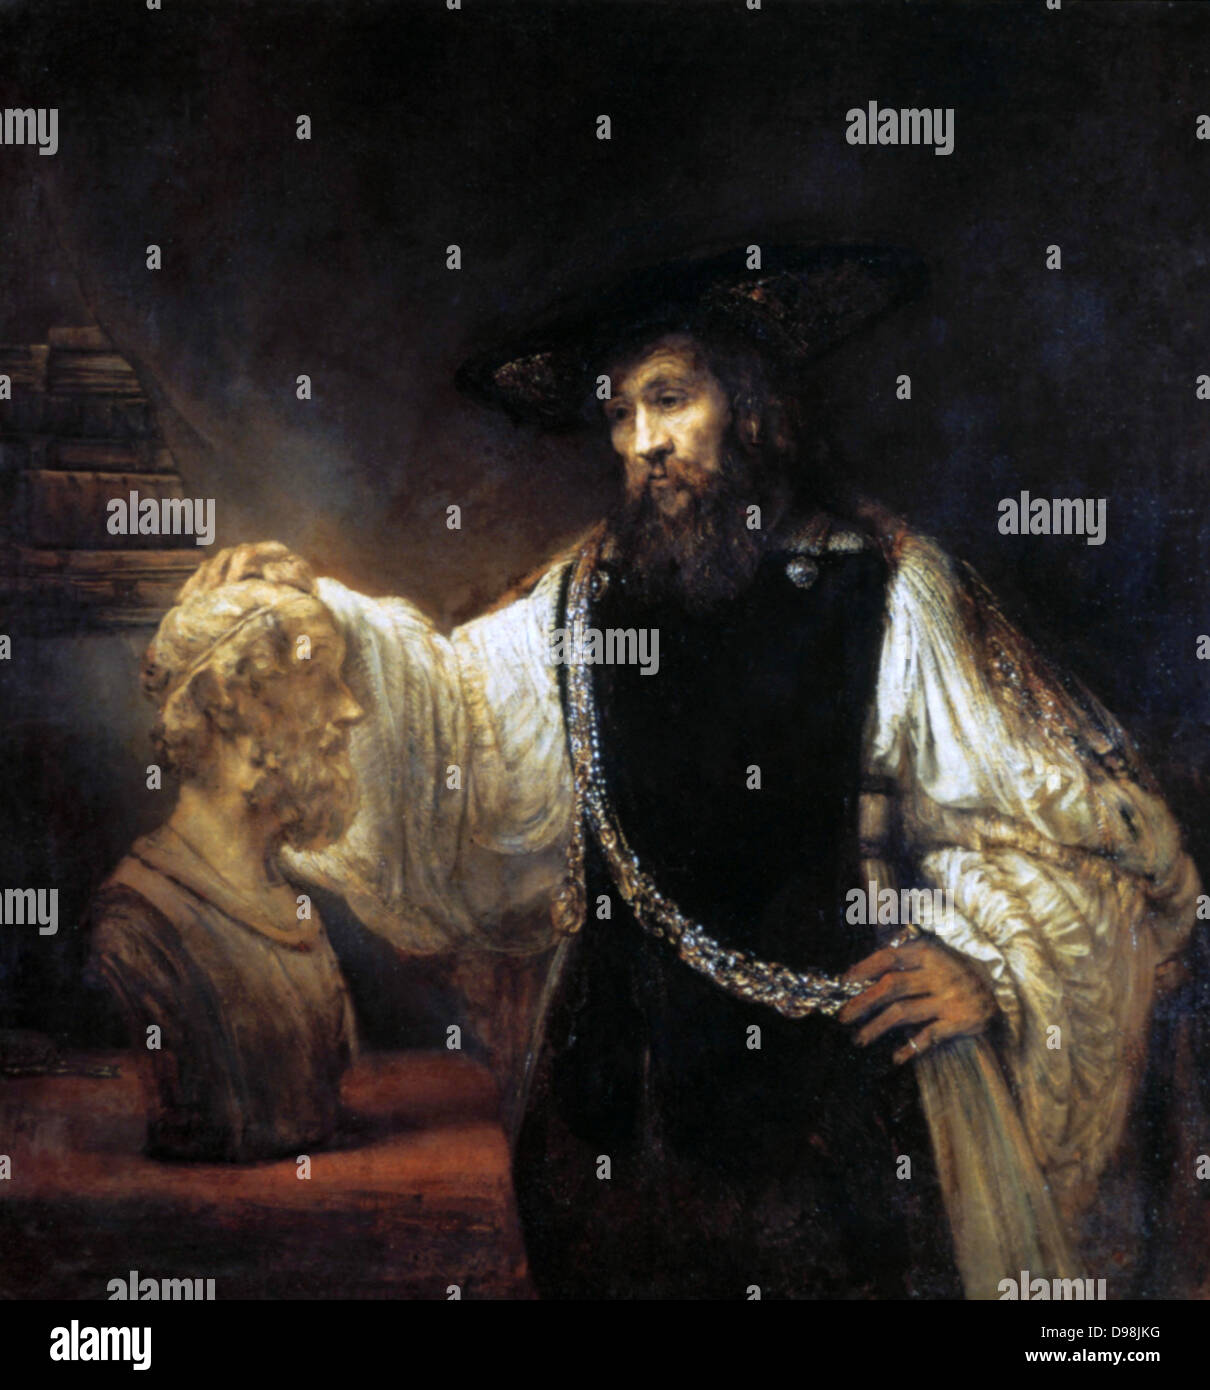 Aristotele contemplando il busto di Omero' . Olio su tela. Harmenszoon Rembrandt van Rijn (1606-1669) pittore olandese e incisore. Ritratto filosofo greco antico Foto Stock